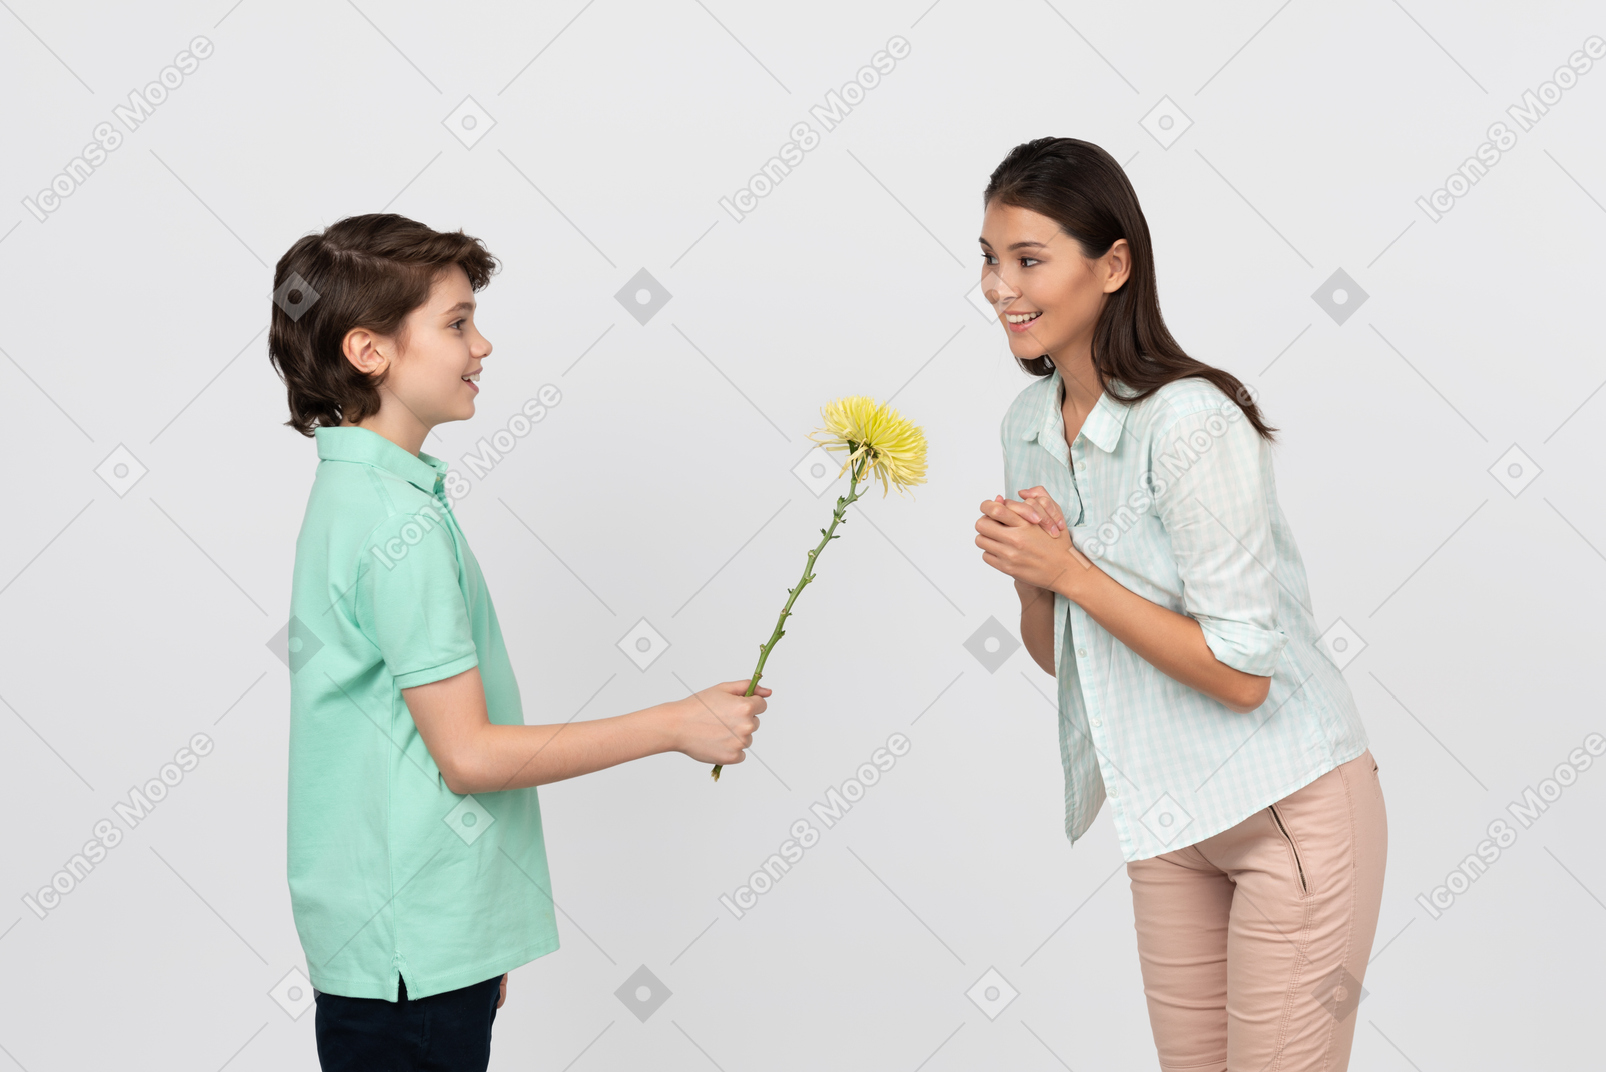 Chico atractivo regalando una flor a su mamá.